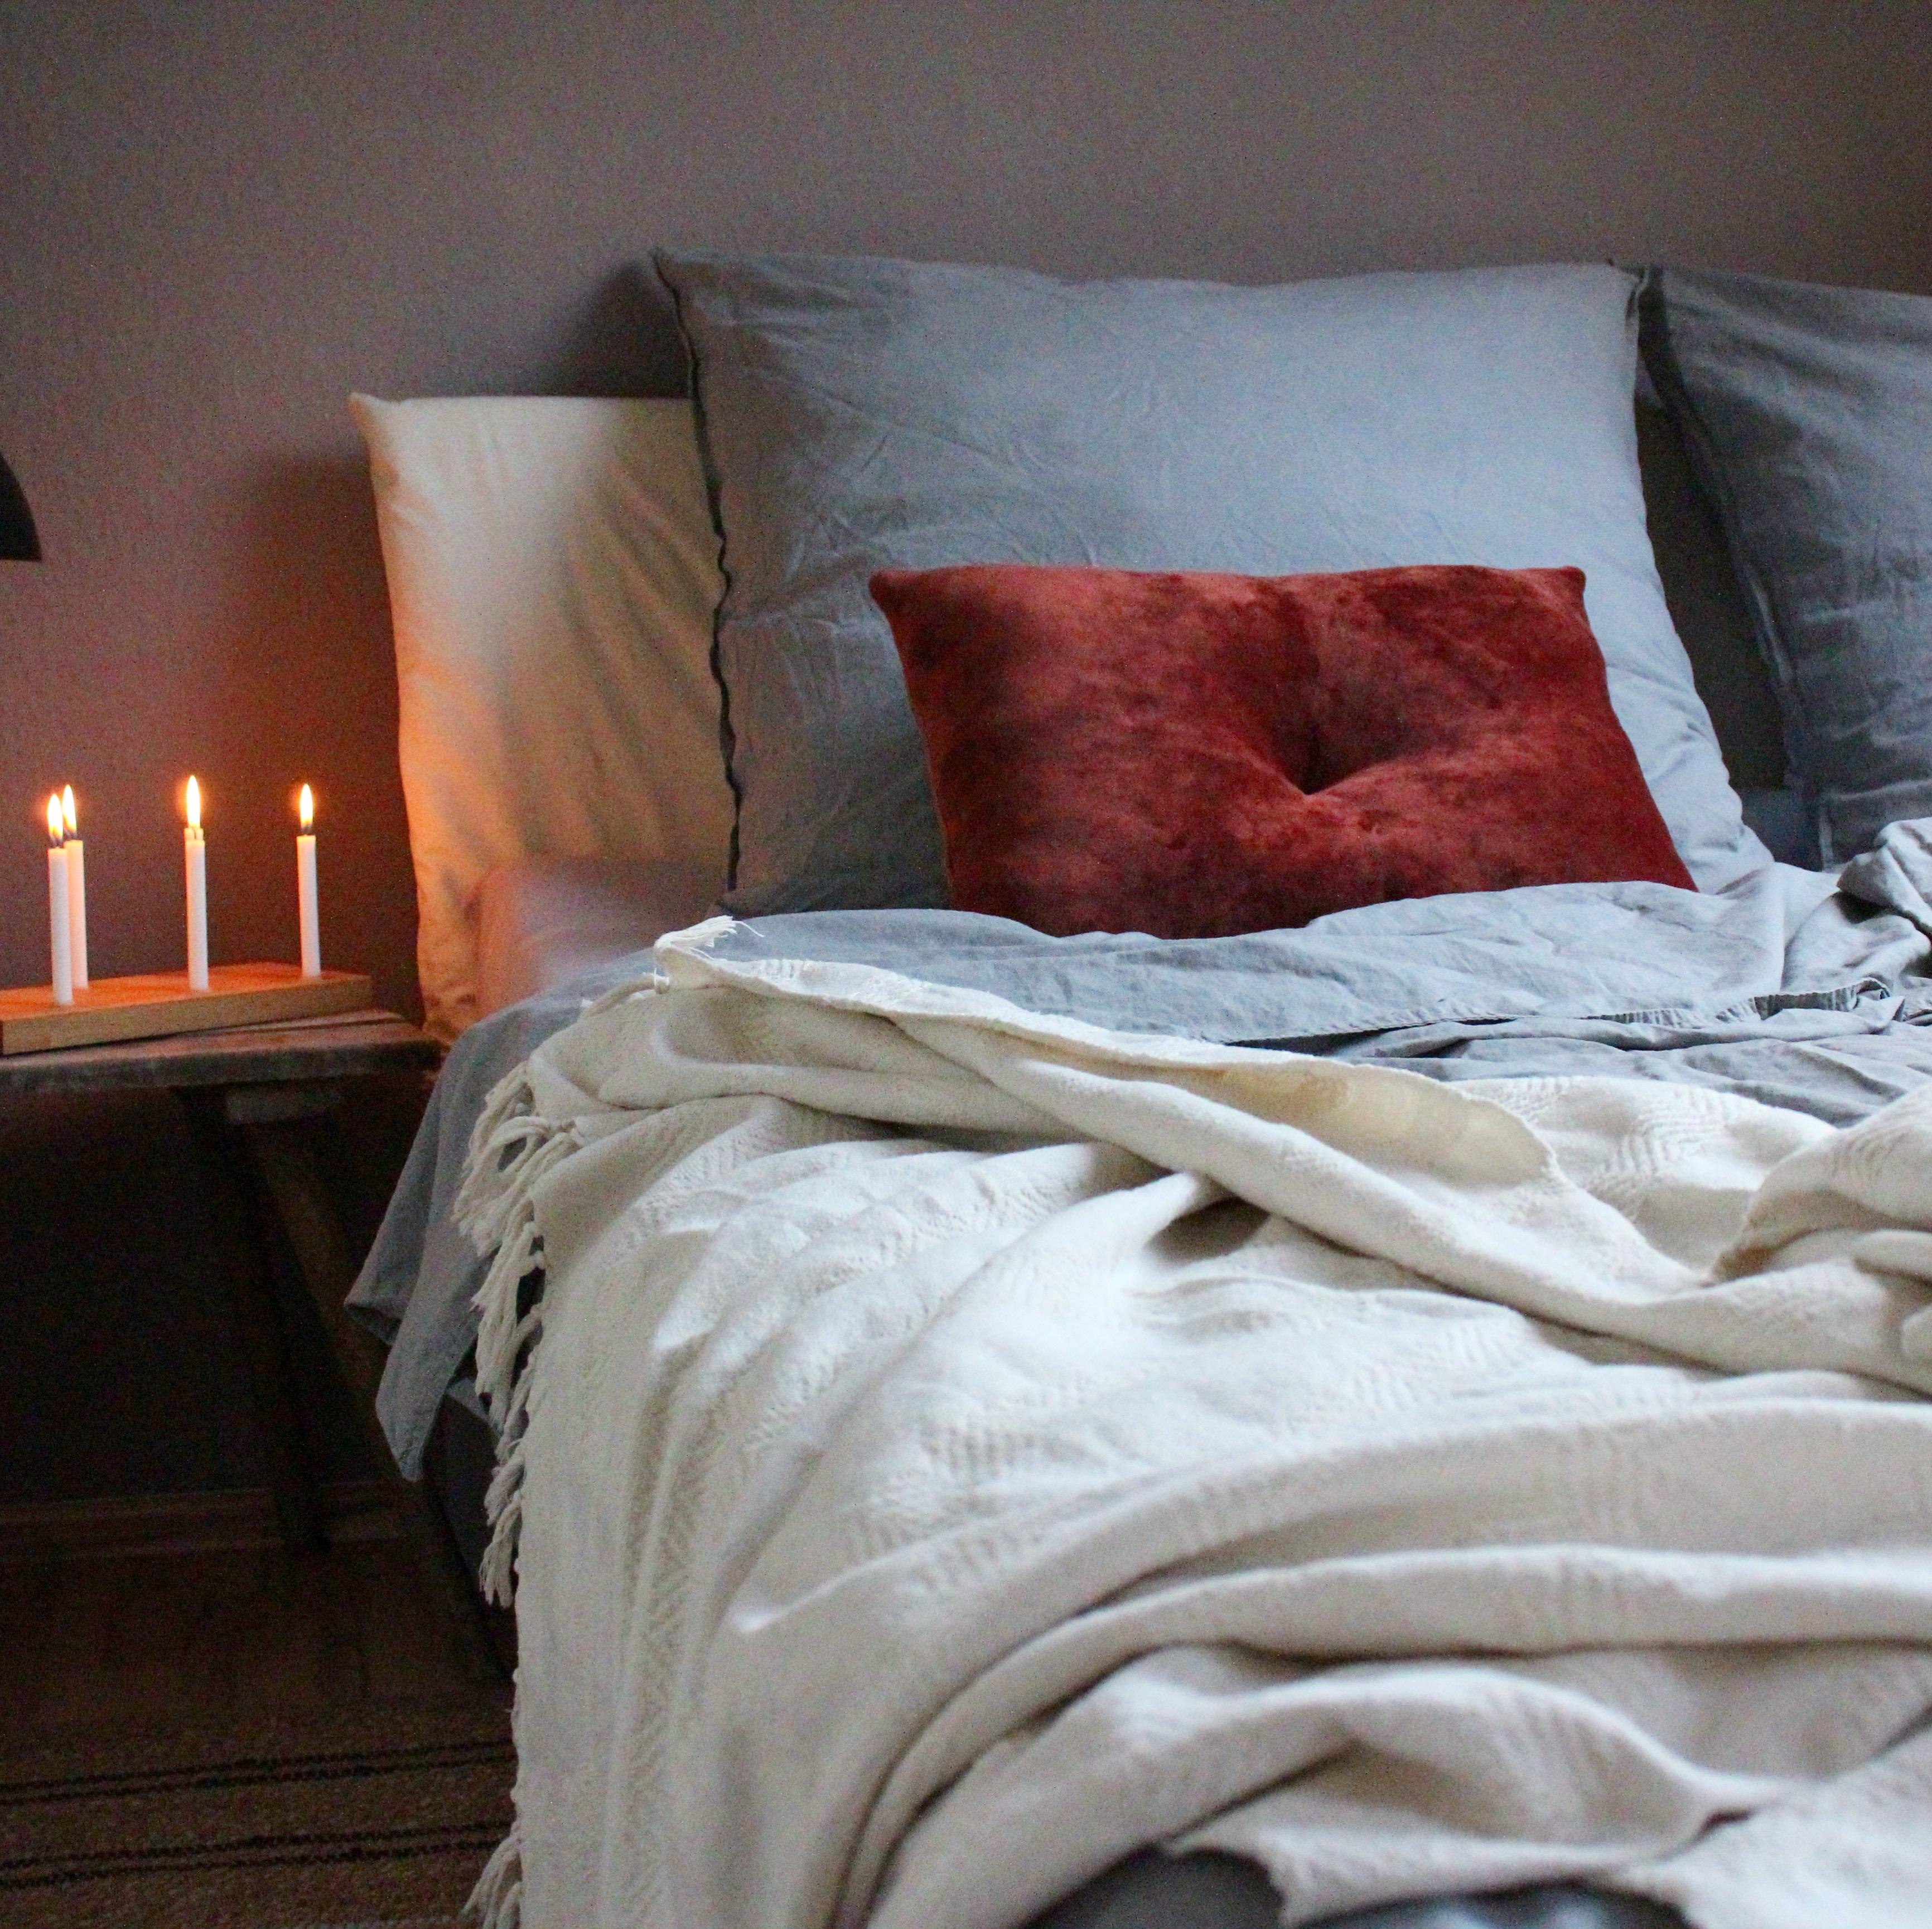 Es geht doch nichts über frisch gewaschene #Bettwäsche im #Schlafzimmer 😊 #couchstyle #bett #interior